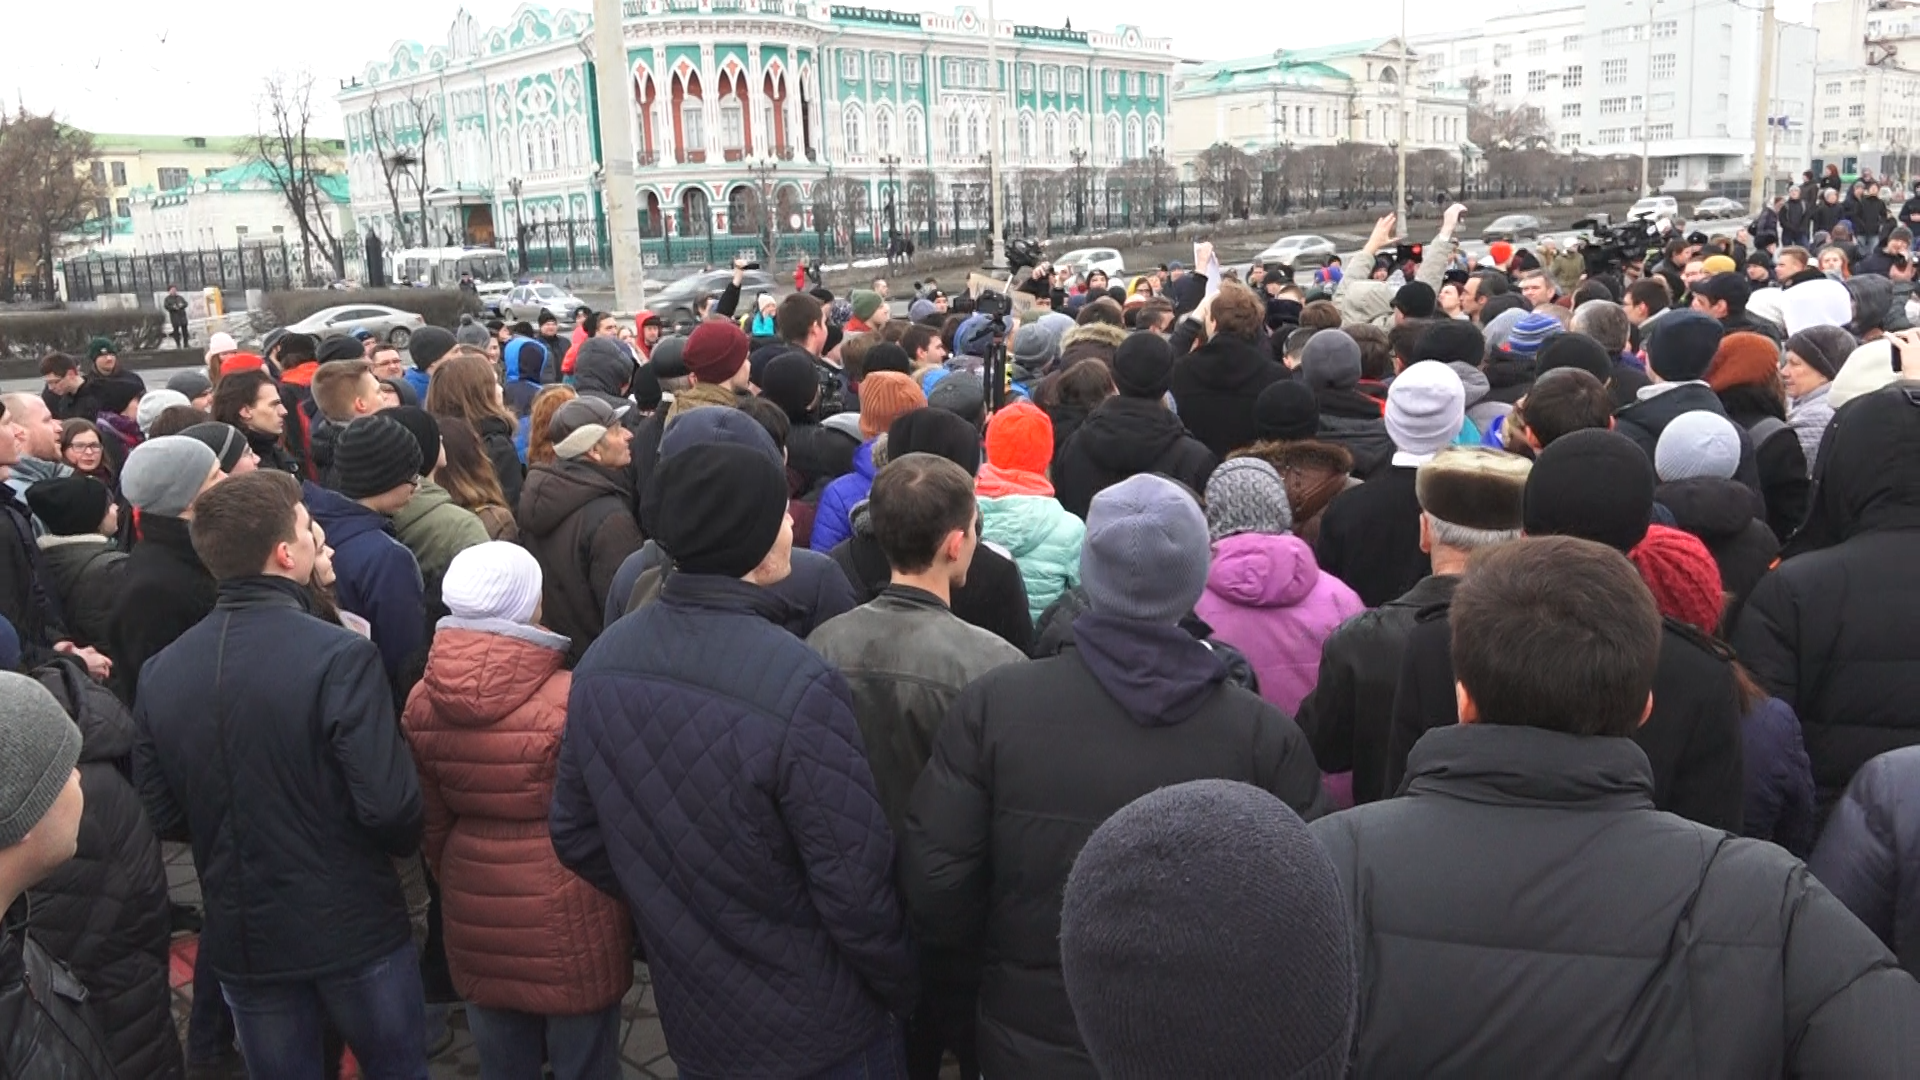 Призвать к ответу премьер-министра. С такой целью тысячи жителей Екатеринбурга вышли на митинг